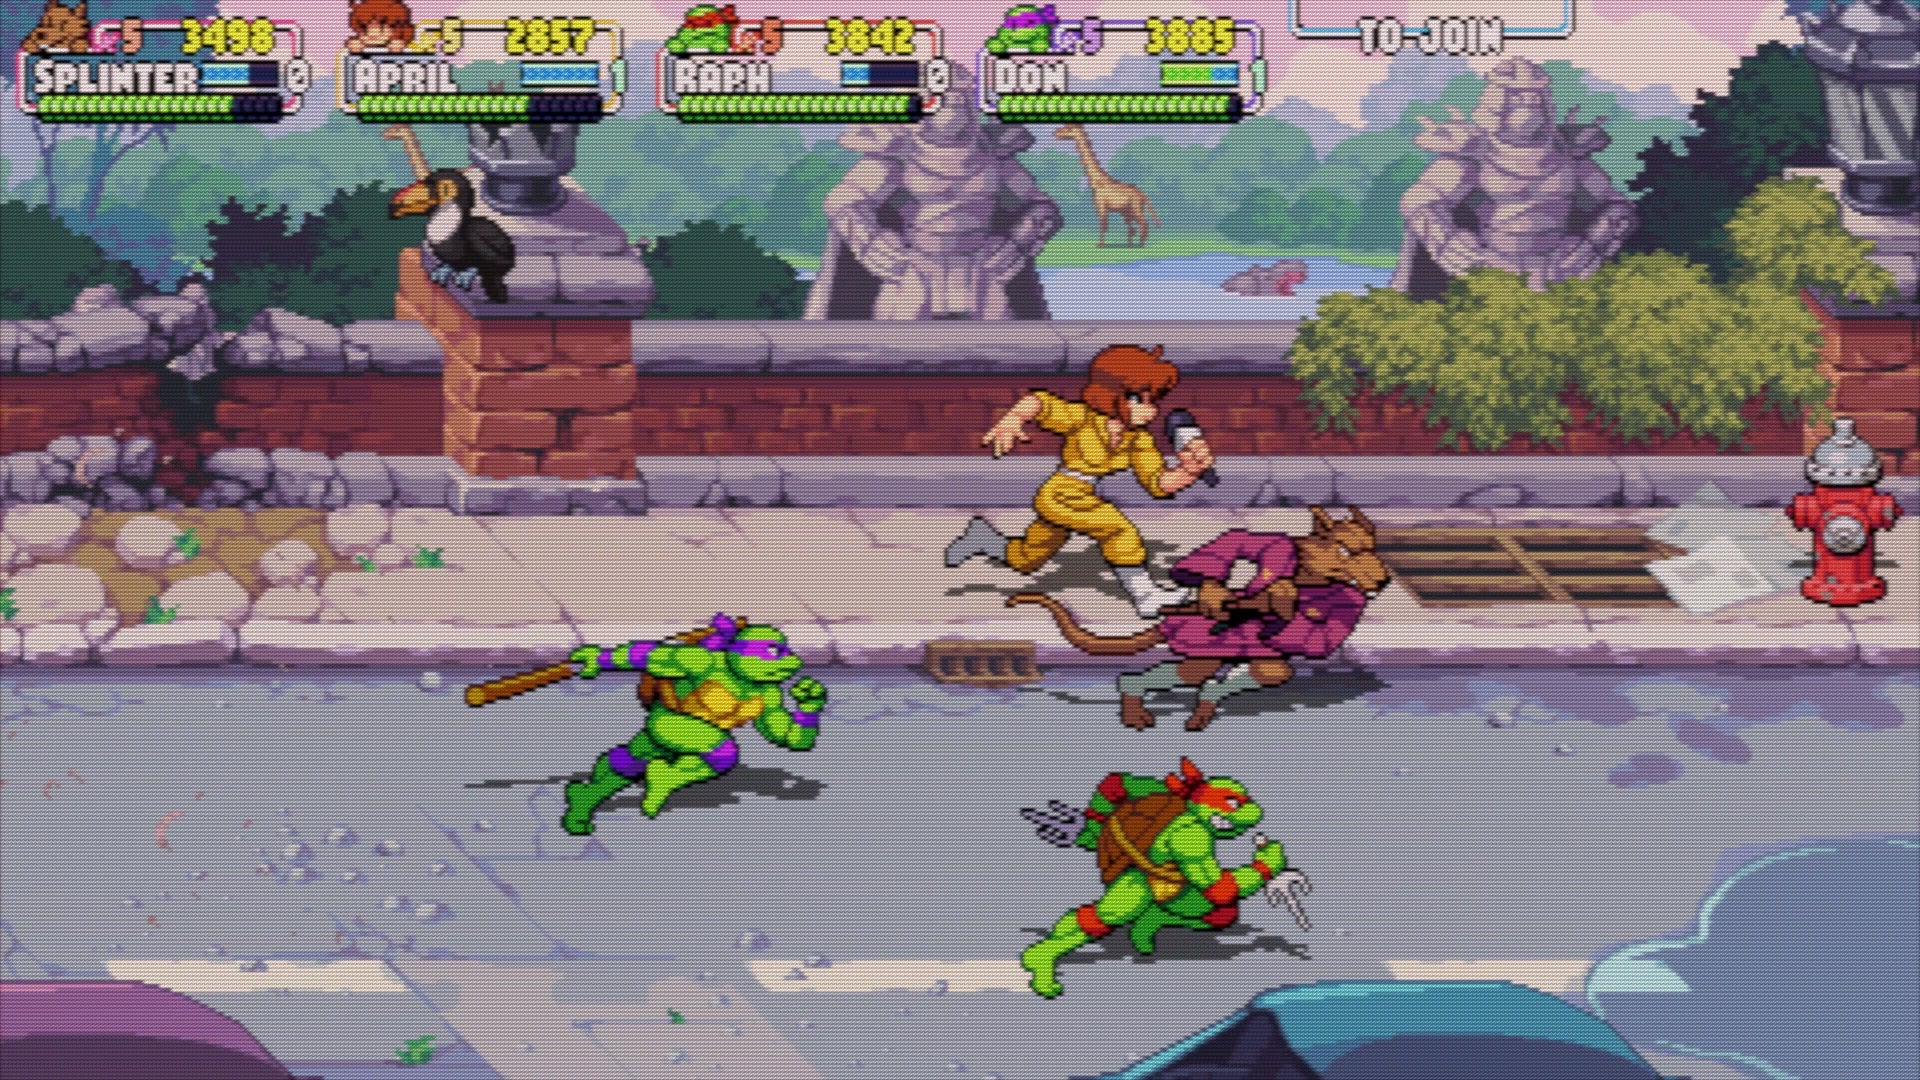 Teenage Mutant Ninja Turtles: Shredder's Rache